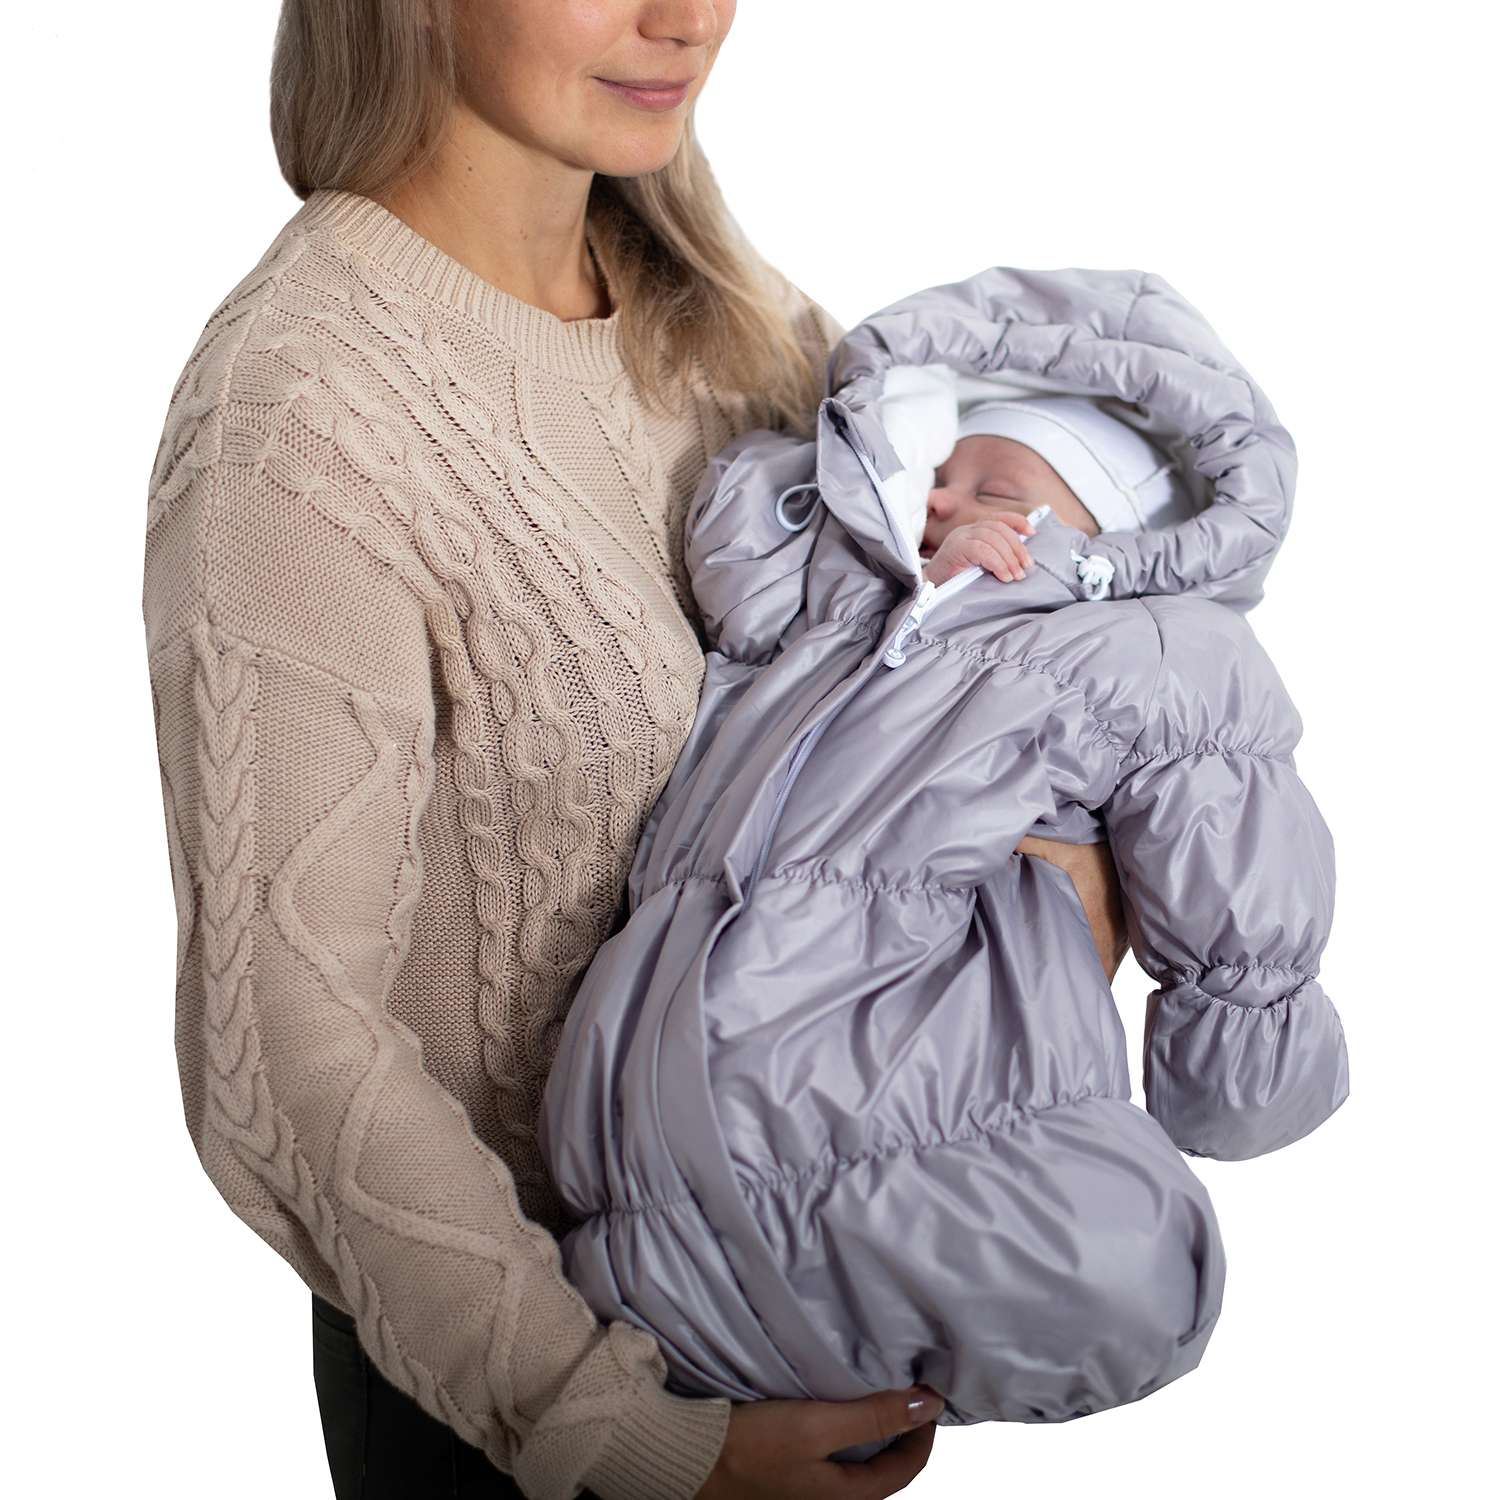 Конверт для новорожденного inlovery на выписку/в коляску «Маршмеллоу» серебряный - фото 6